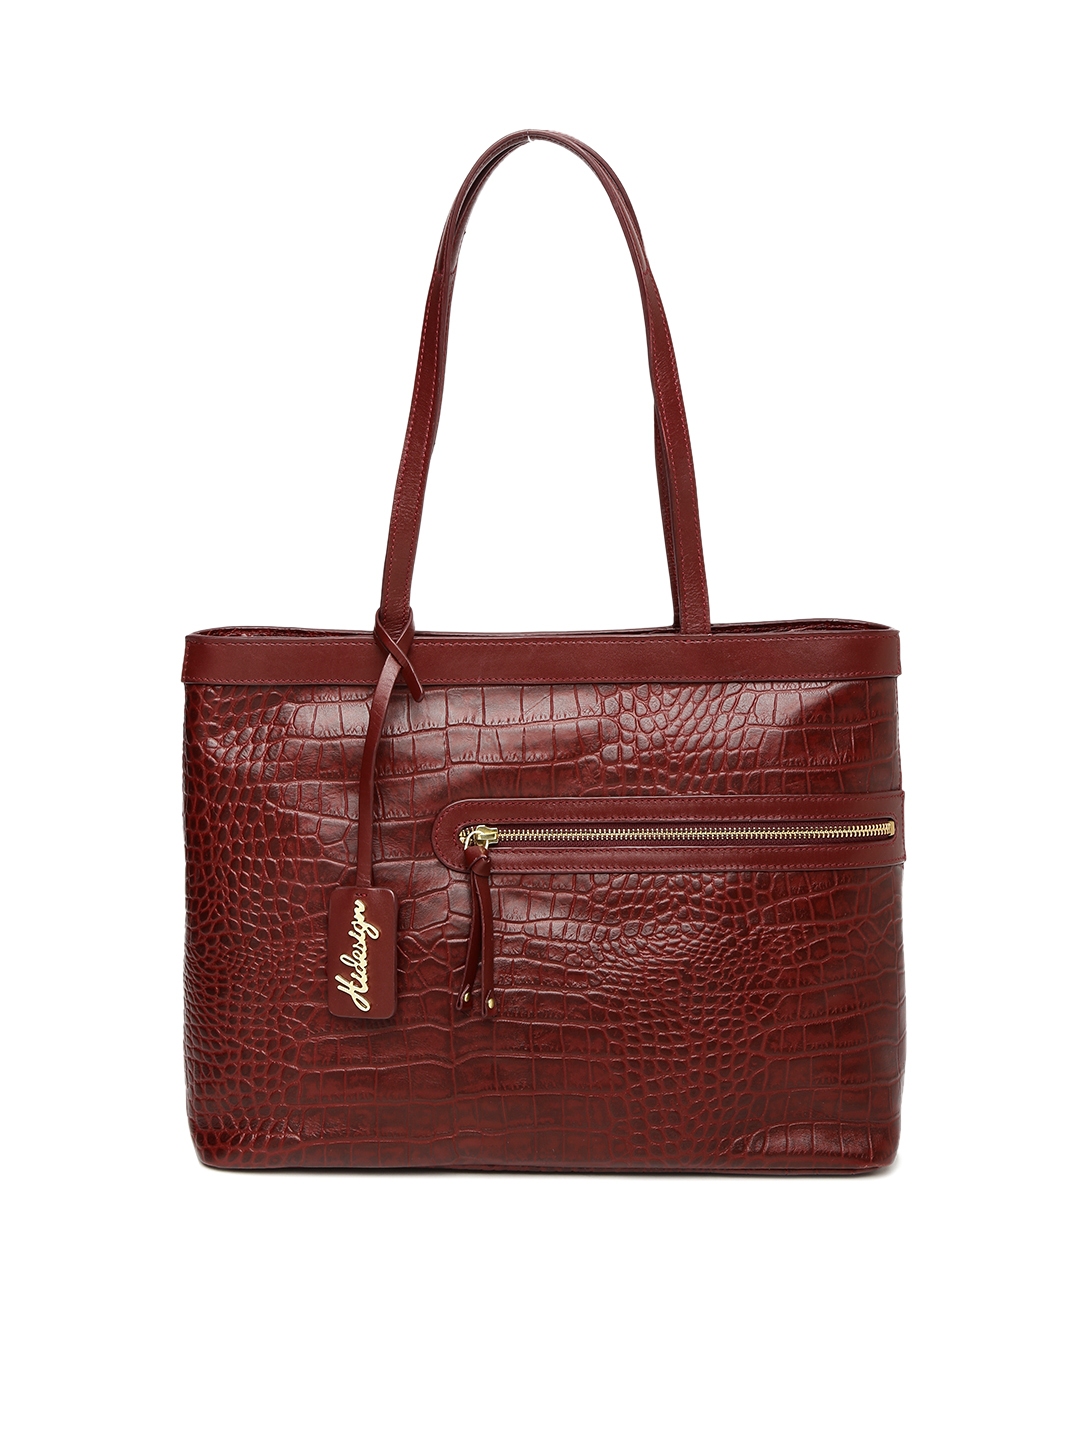 Hidesign Handbags  Buy Hidesign bags Online  Myntra